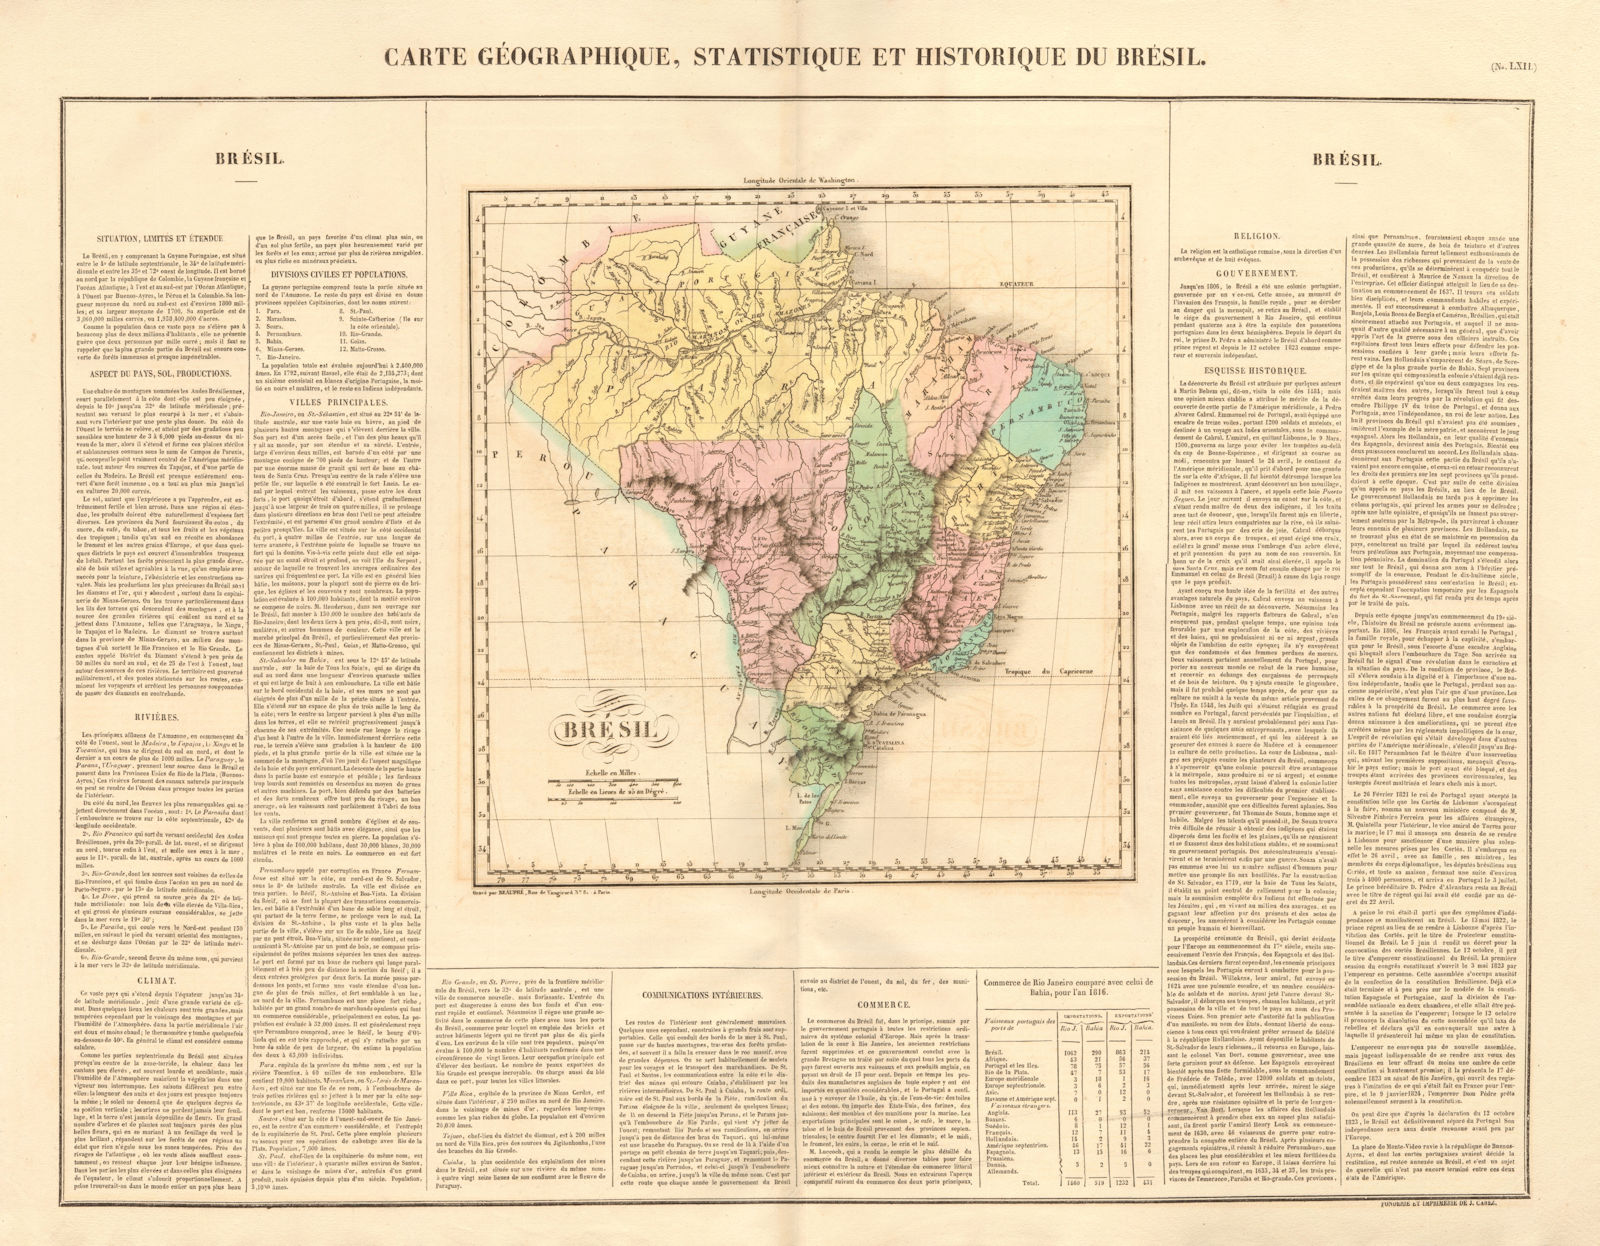 'Brésil'. Brazil. BUCHON 1825 old antique vintage map plan chart